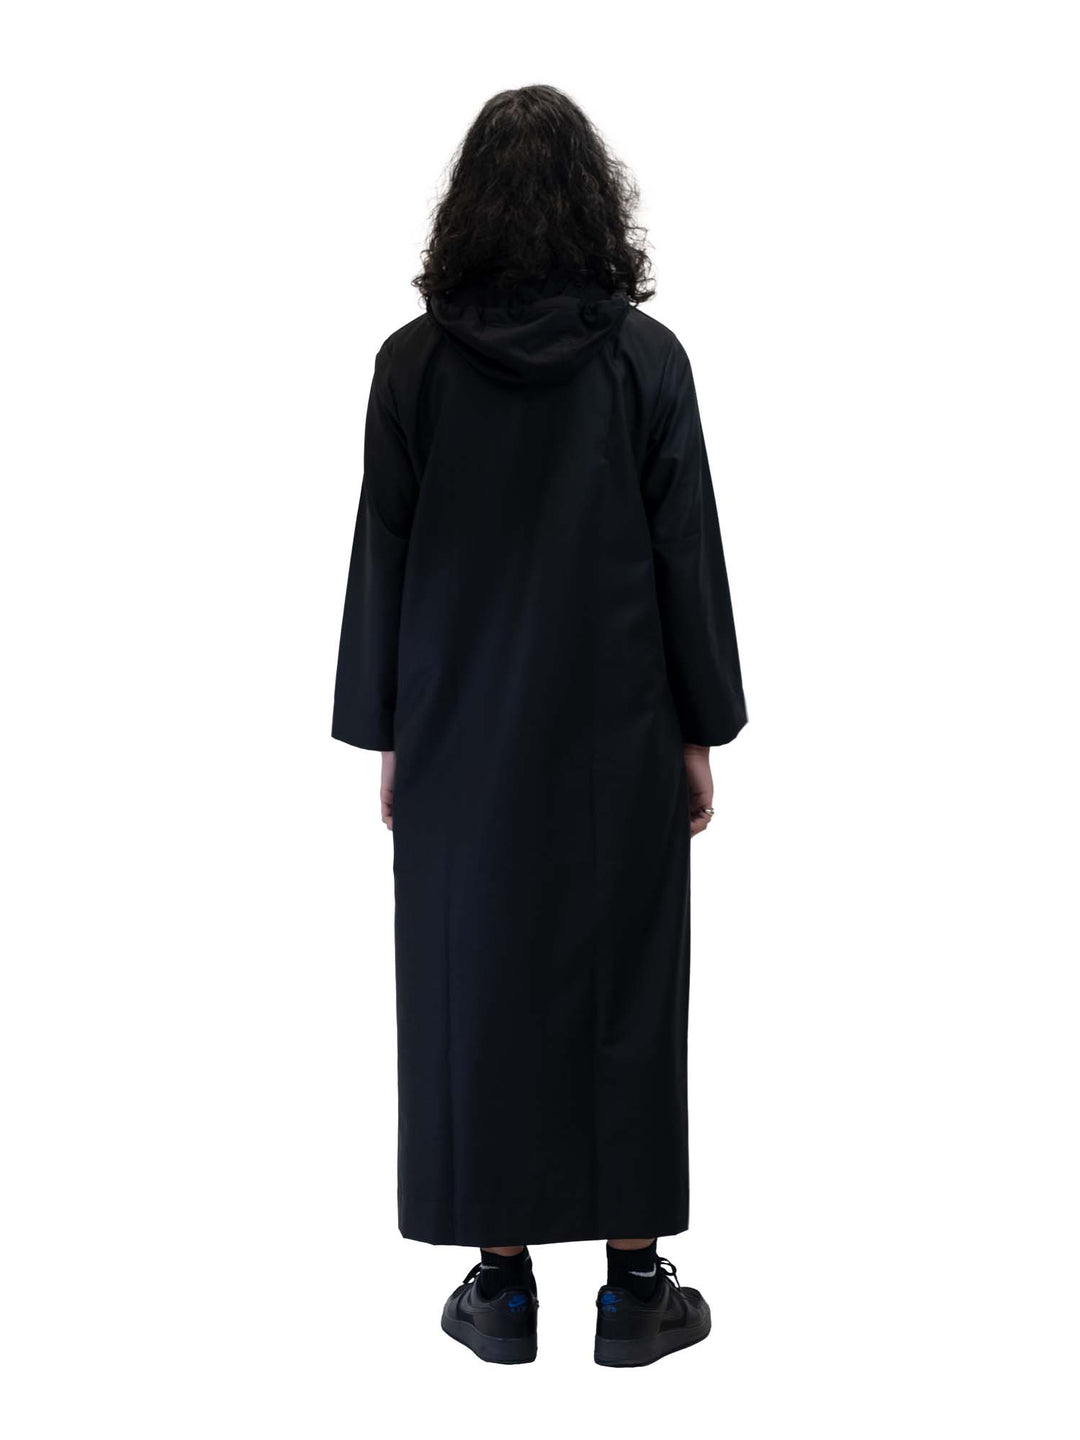 ثوب هودي أوربان - أسود